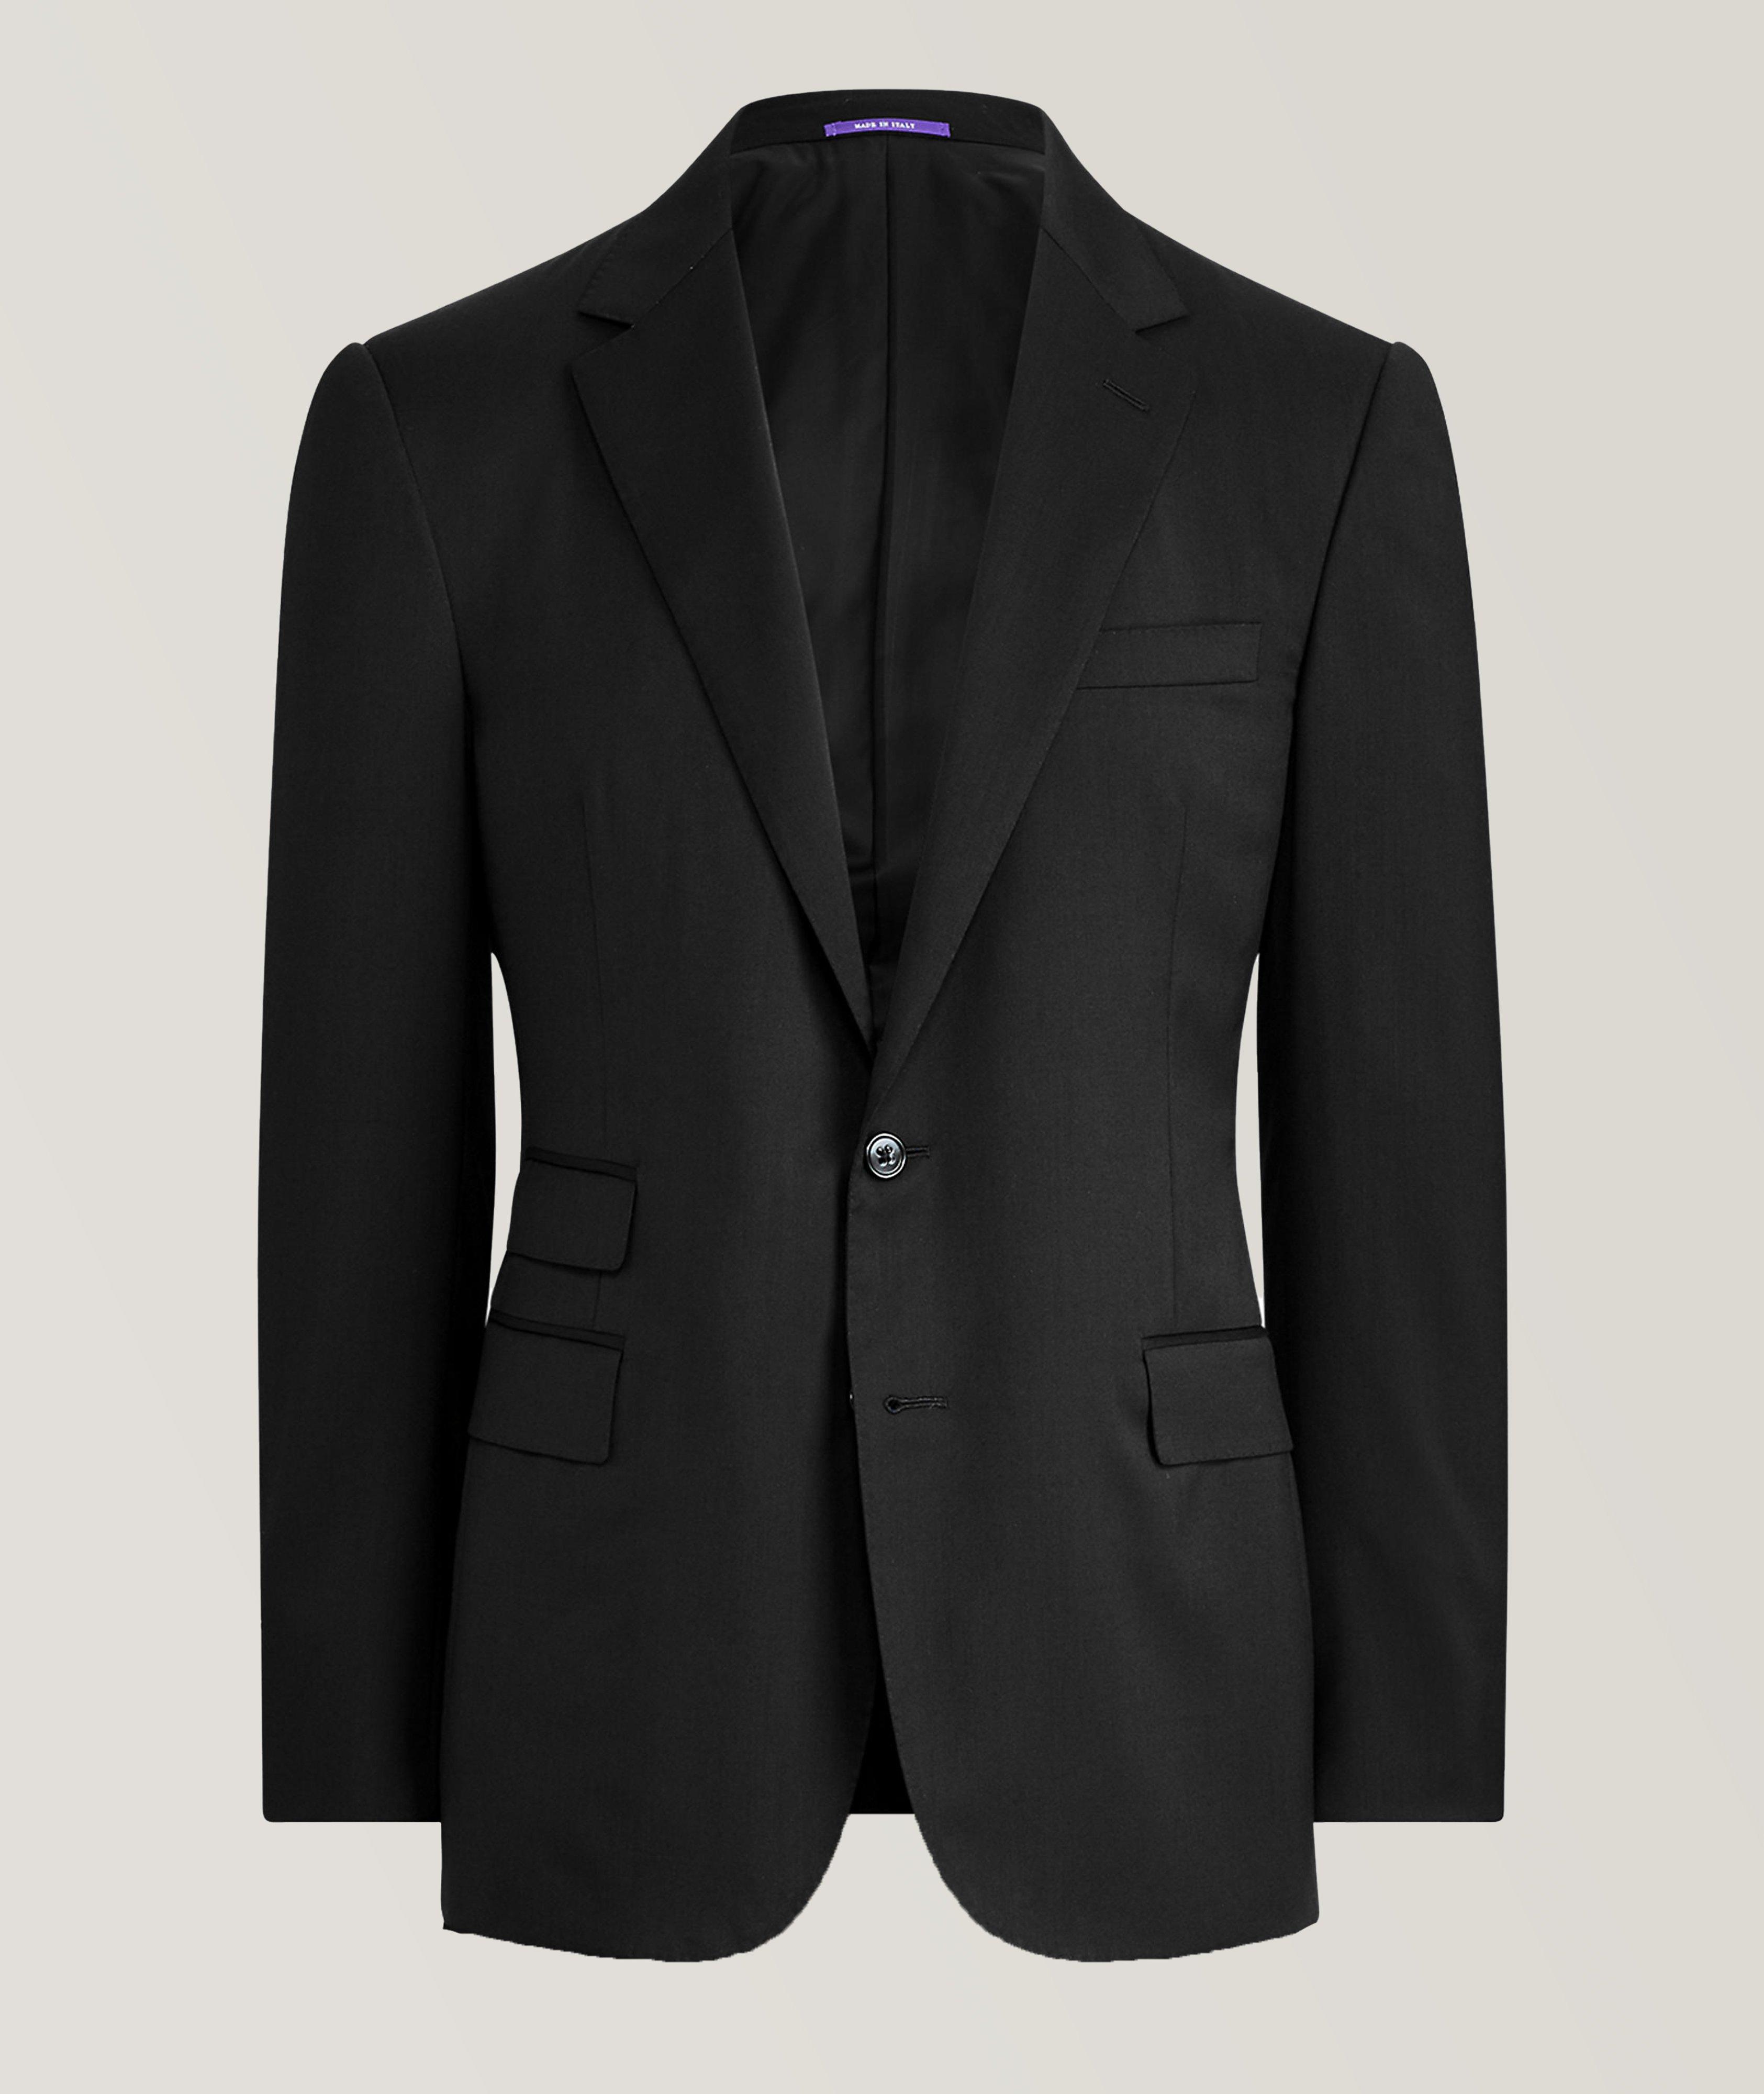 Mens Matte Black Suit with Satin Lapel - Suit Lab